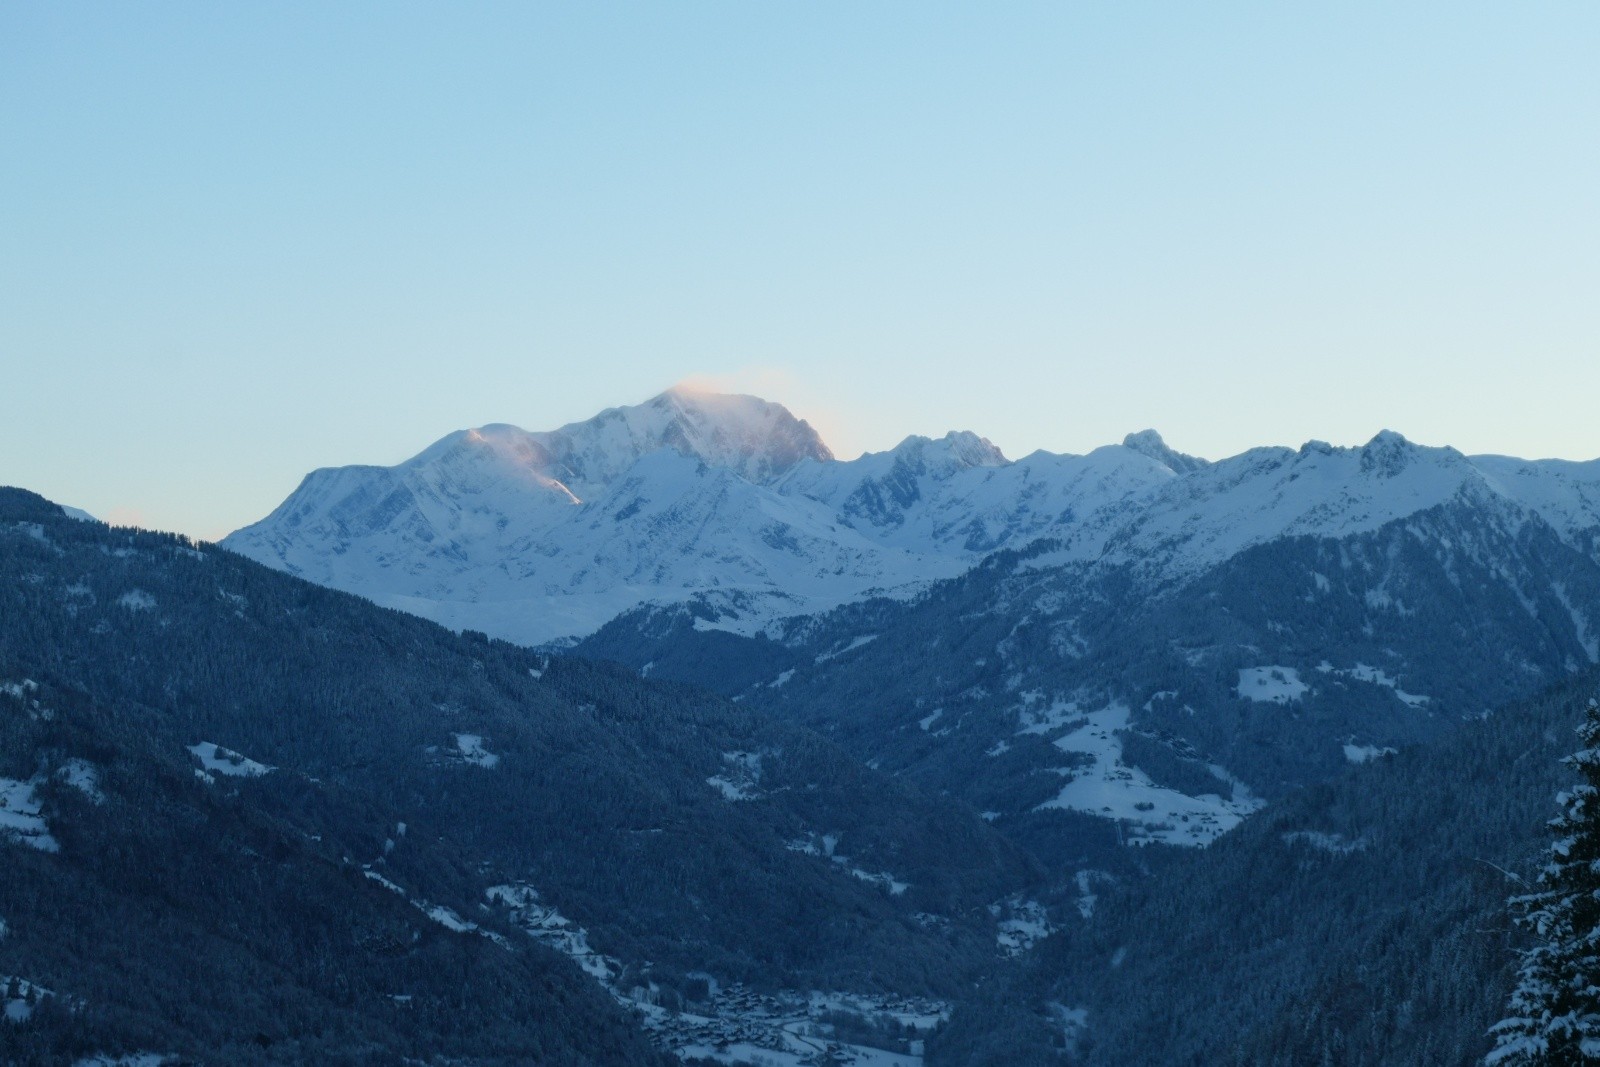  Le Mt Blanc se réveille